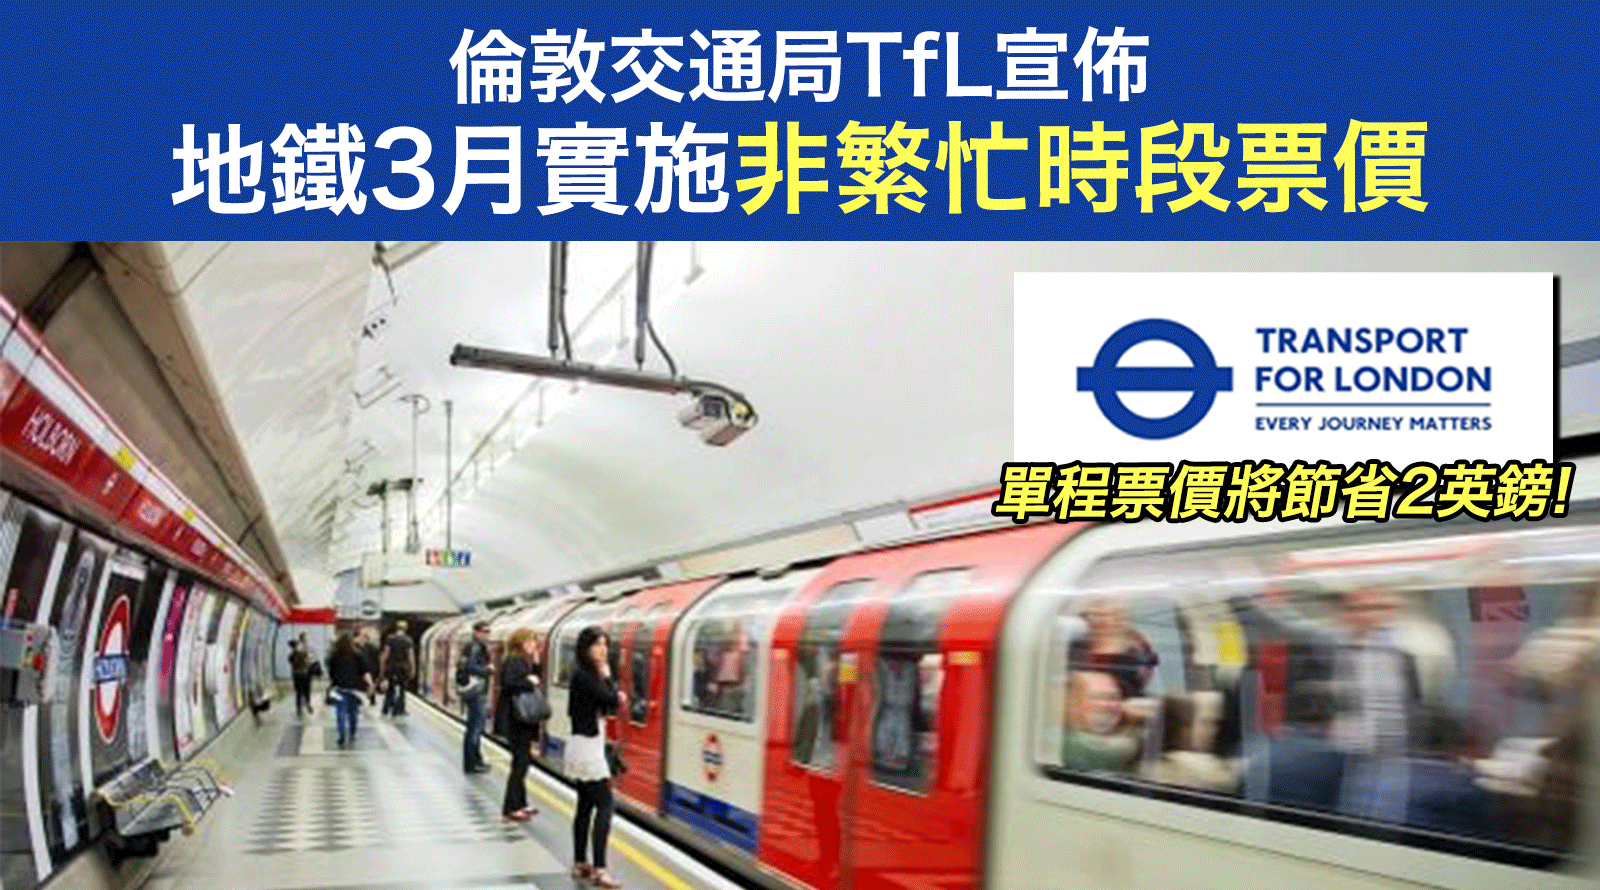 倫敦交通局TfL宣佈-地鐵3月實施非繁忙時段票價